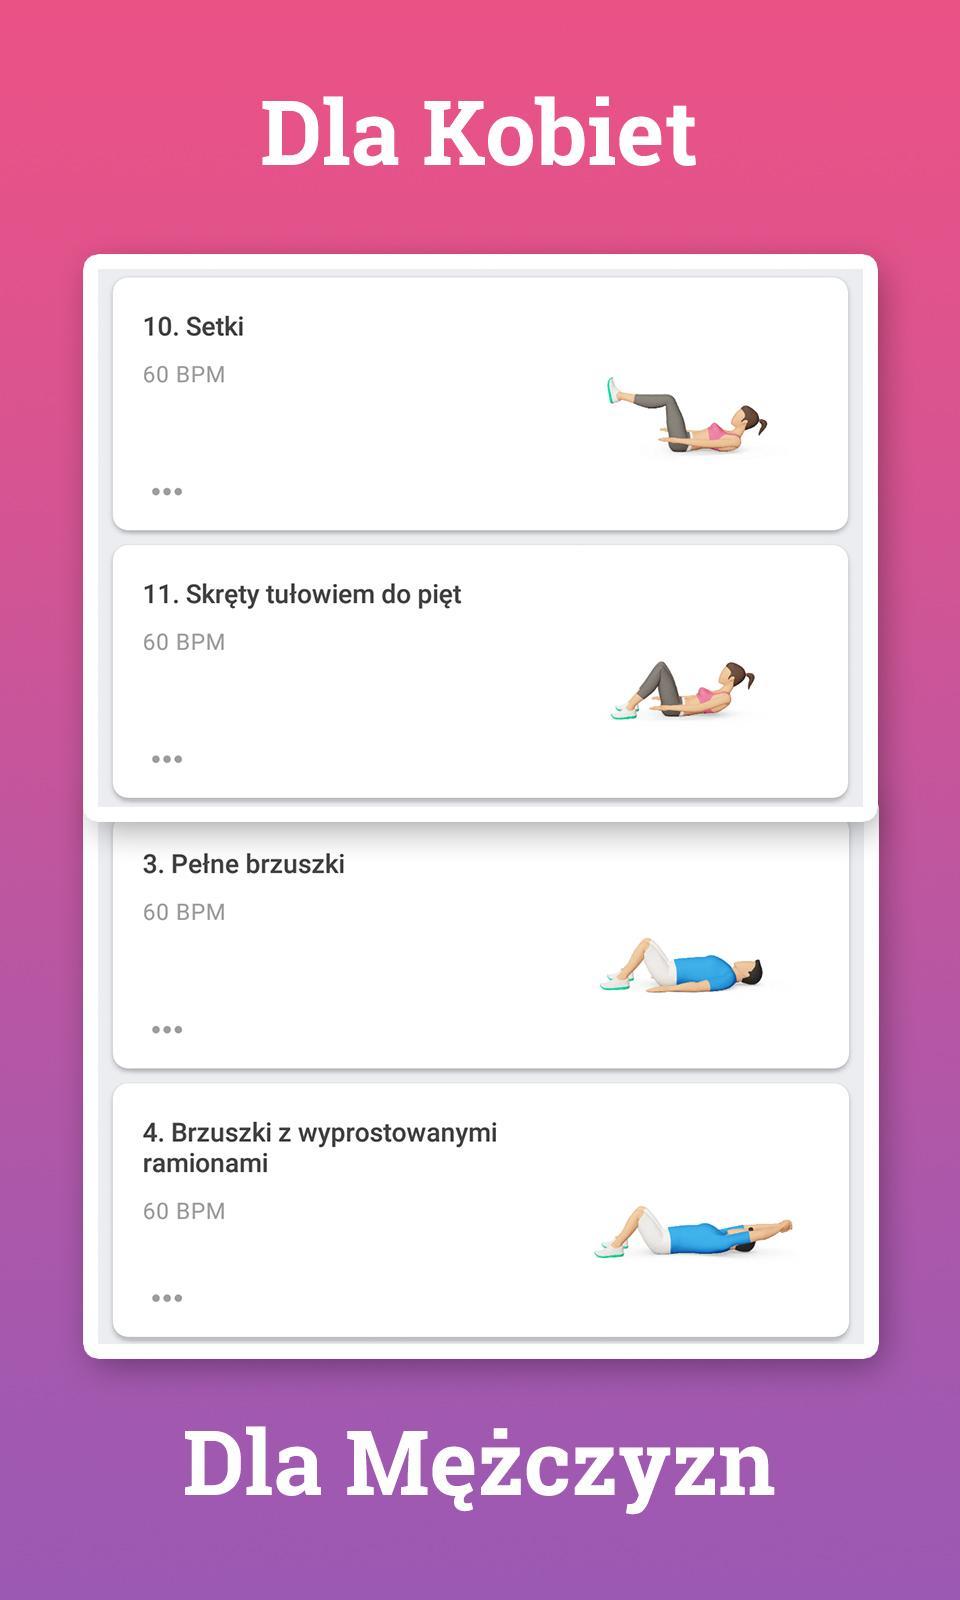 Ćwiczenia na brzuch i spalanie tłuszczu - Absbee for Android - APK Download